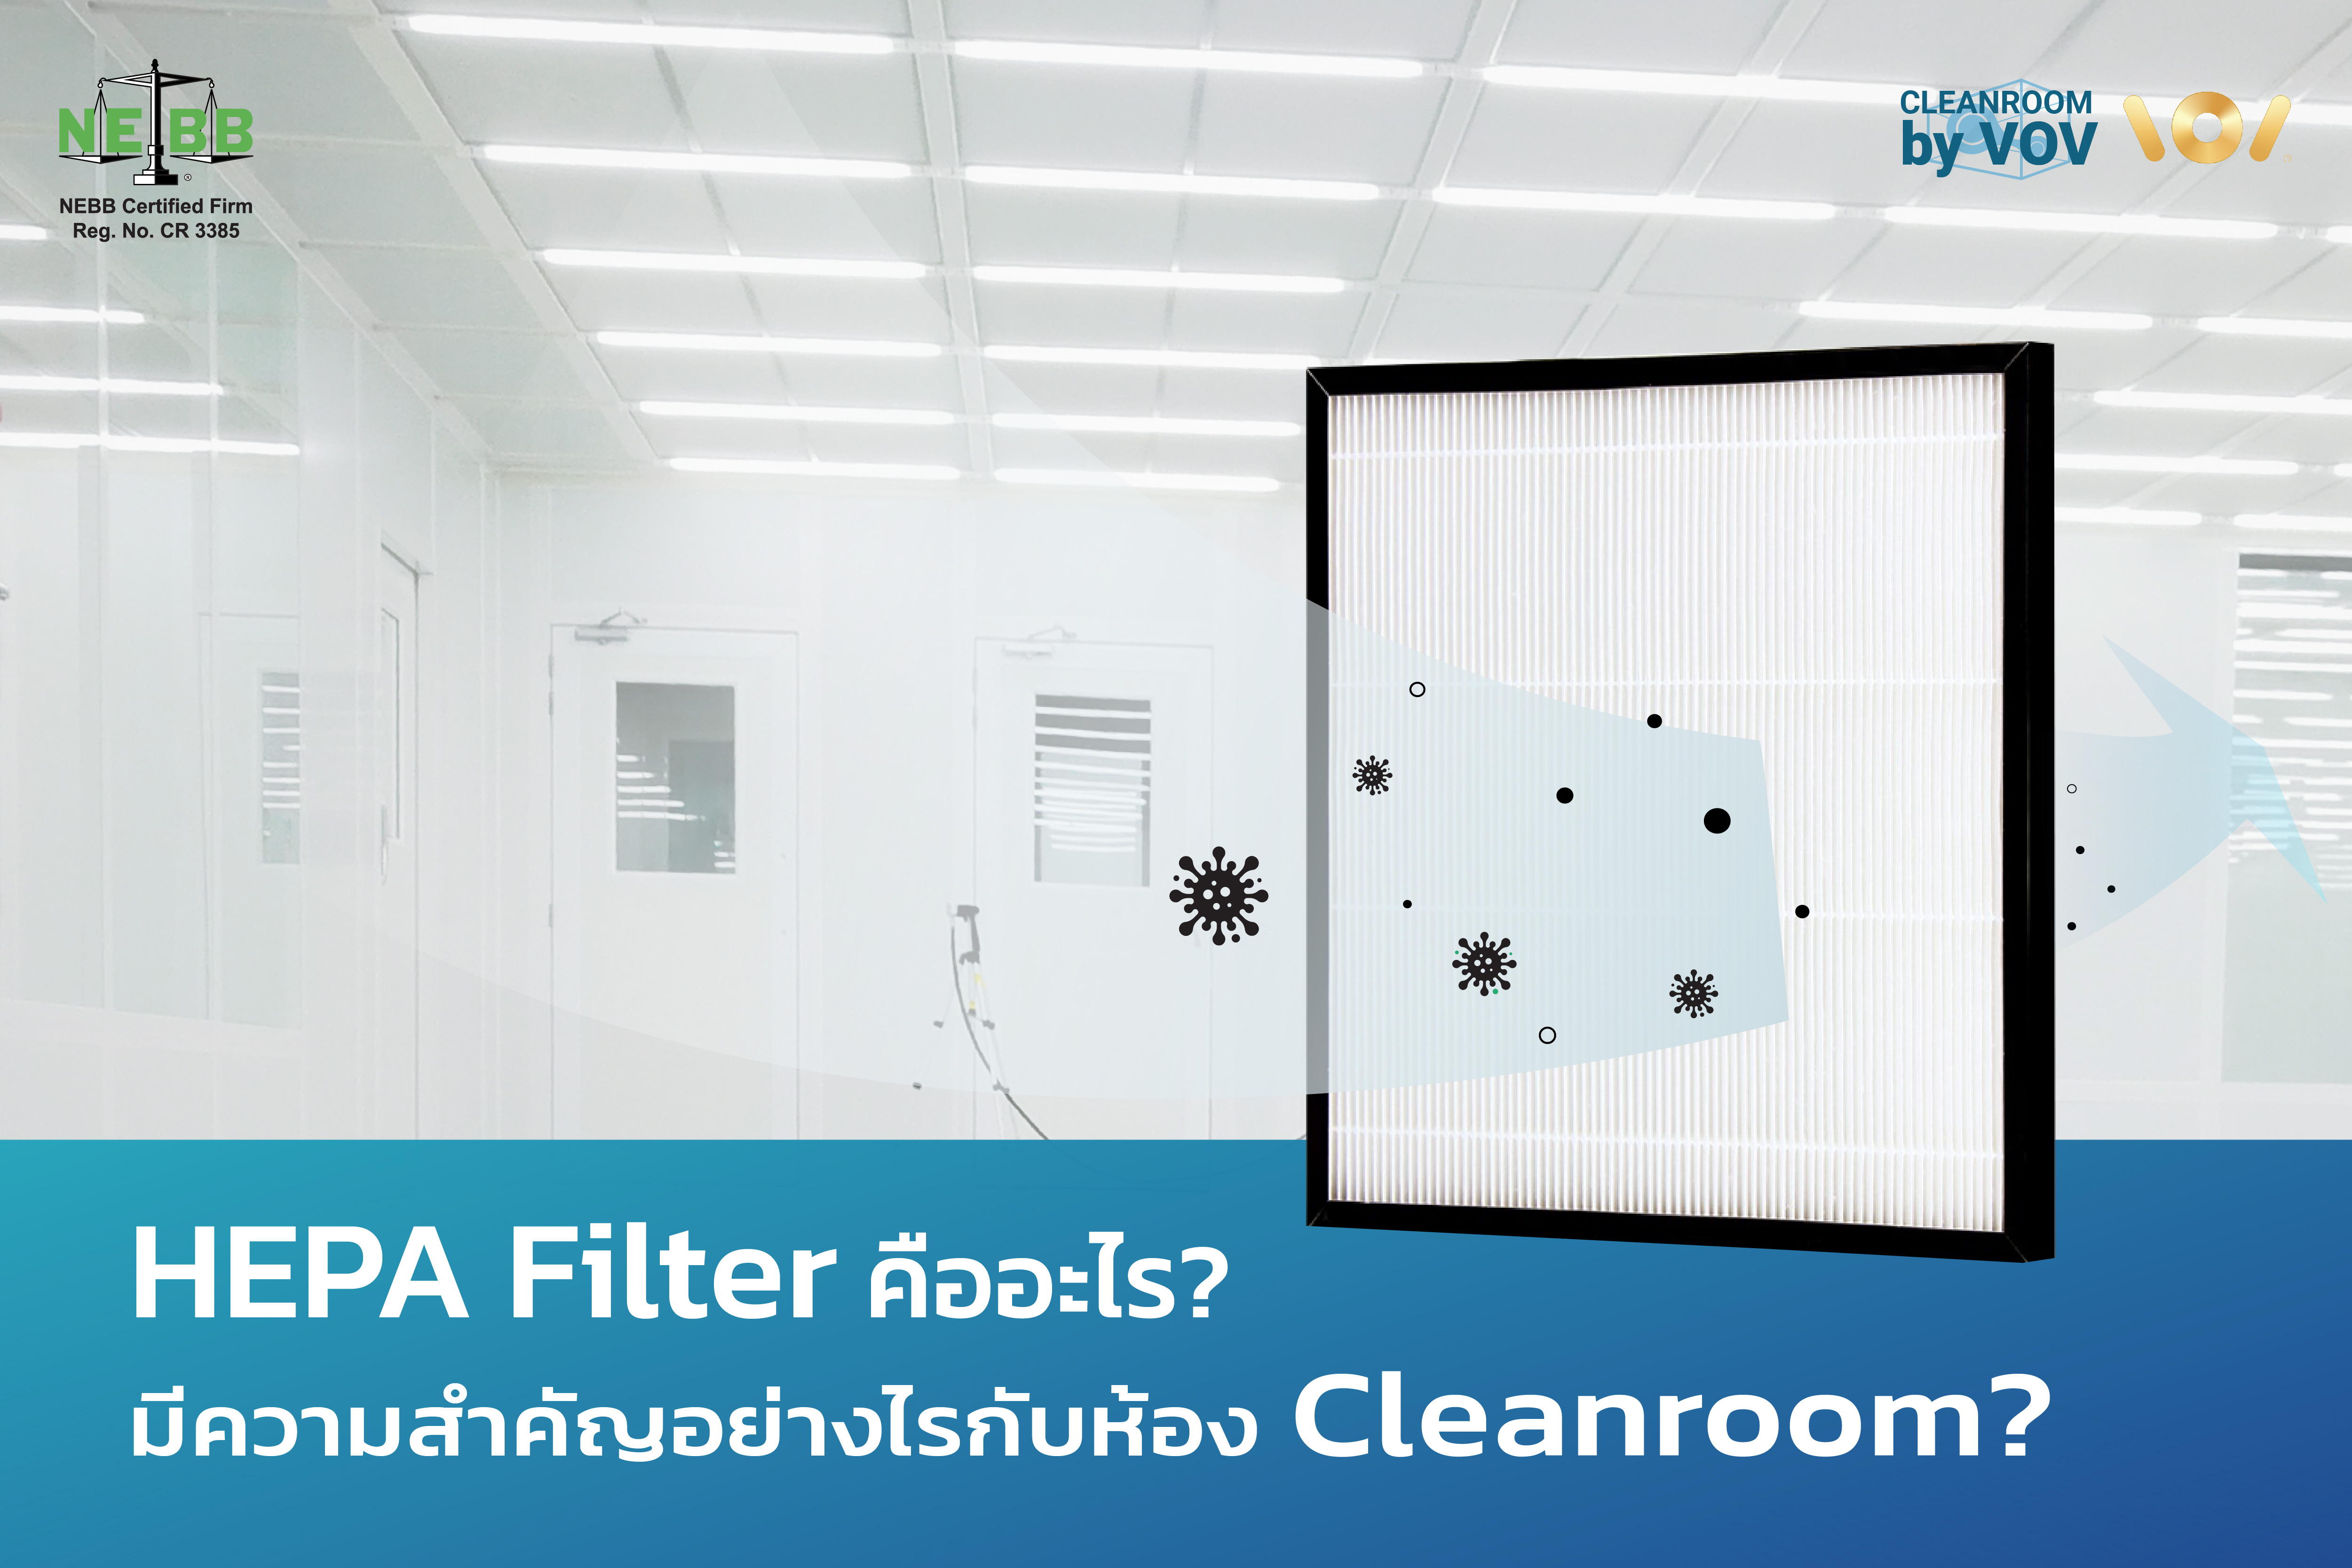 ทำความรู้จัก แผ่นกรอง HEPA Filter คืออะไร? ทำไมสำคัญต่อ Cleanroom